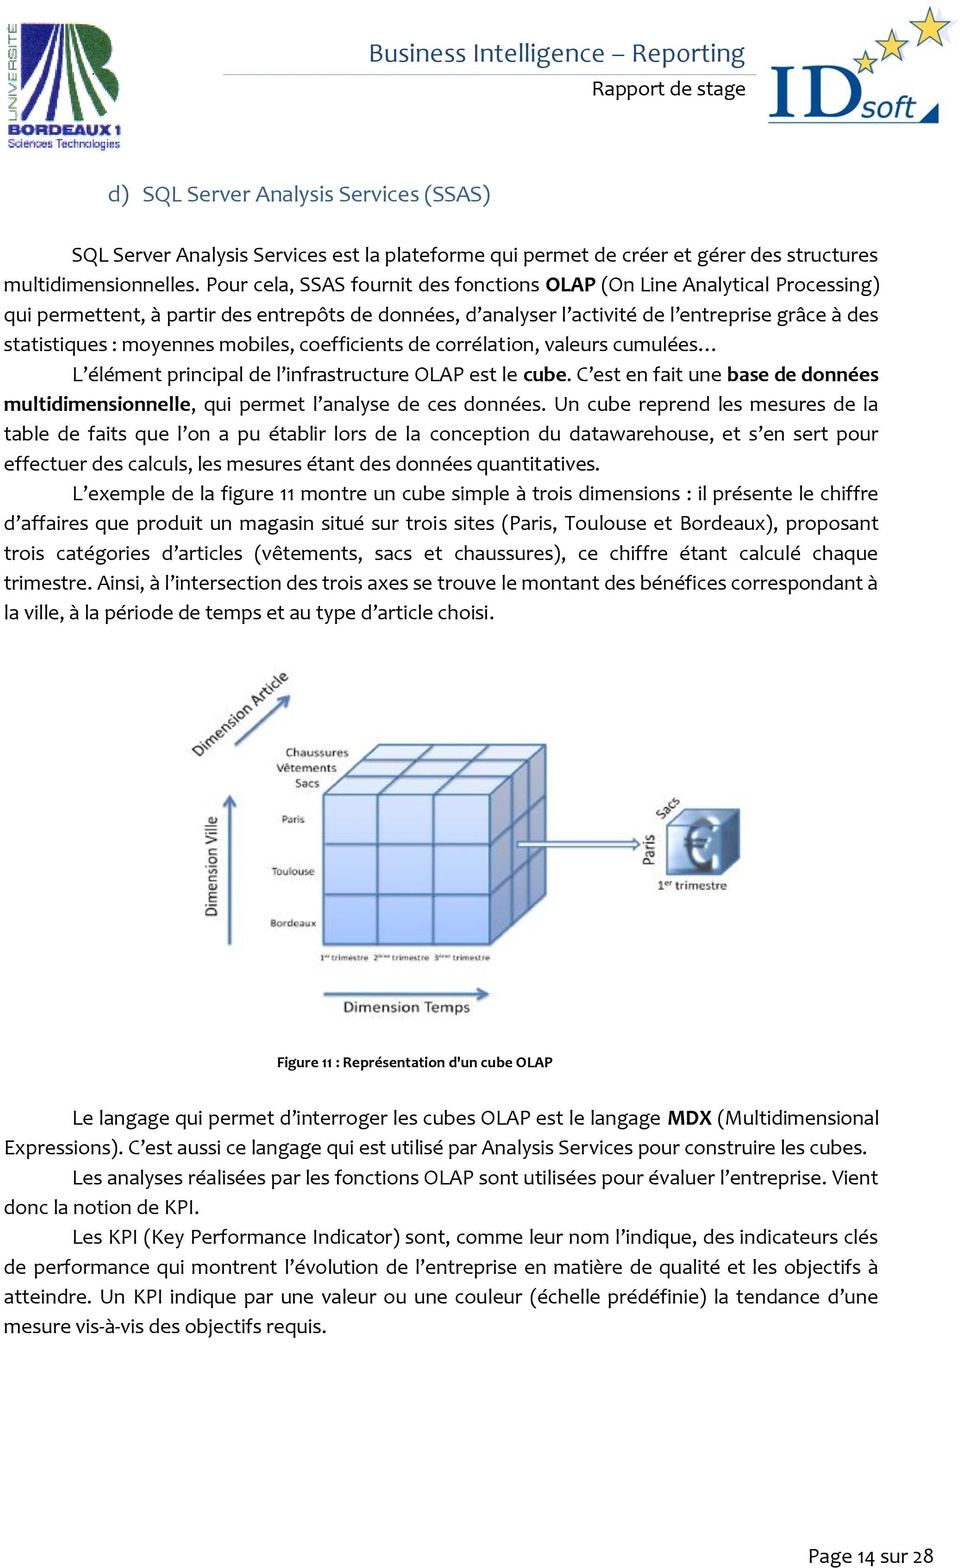 mobiles, coefficients de corrélation, valeurs cumulées L élément principal de l infrastructure OLAP est le cube.